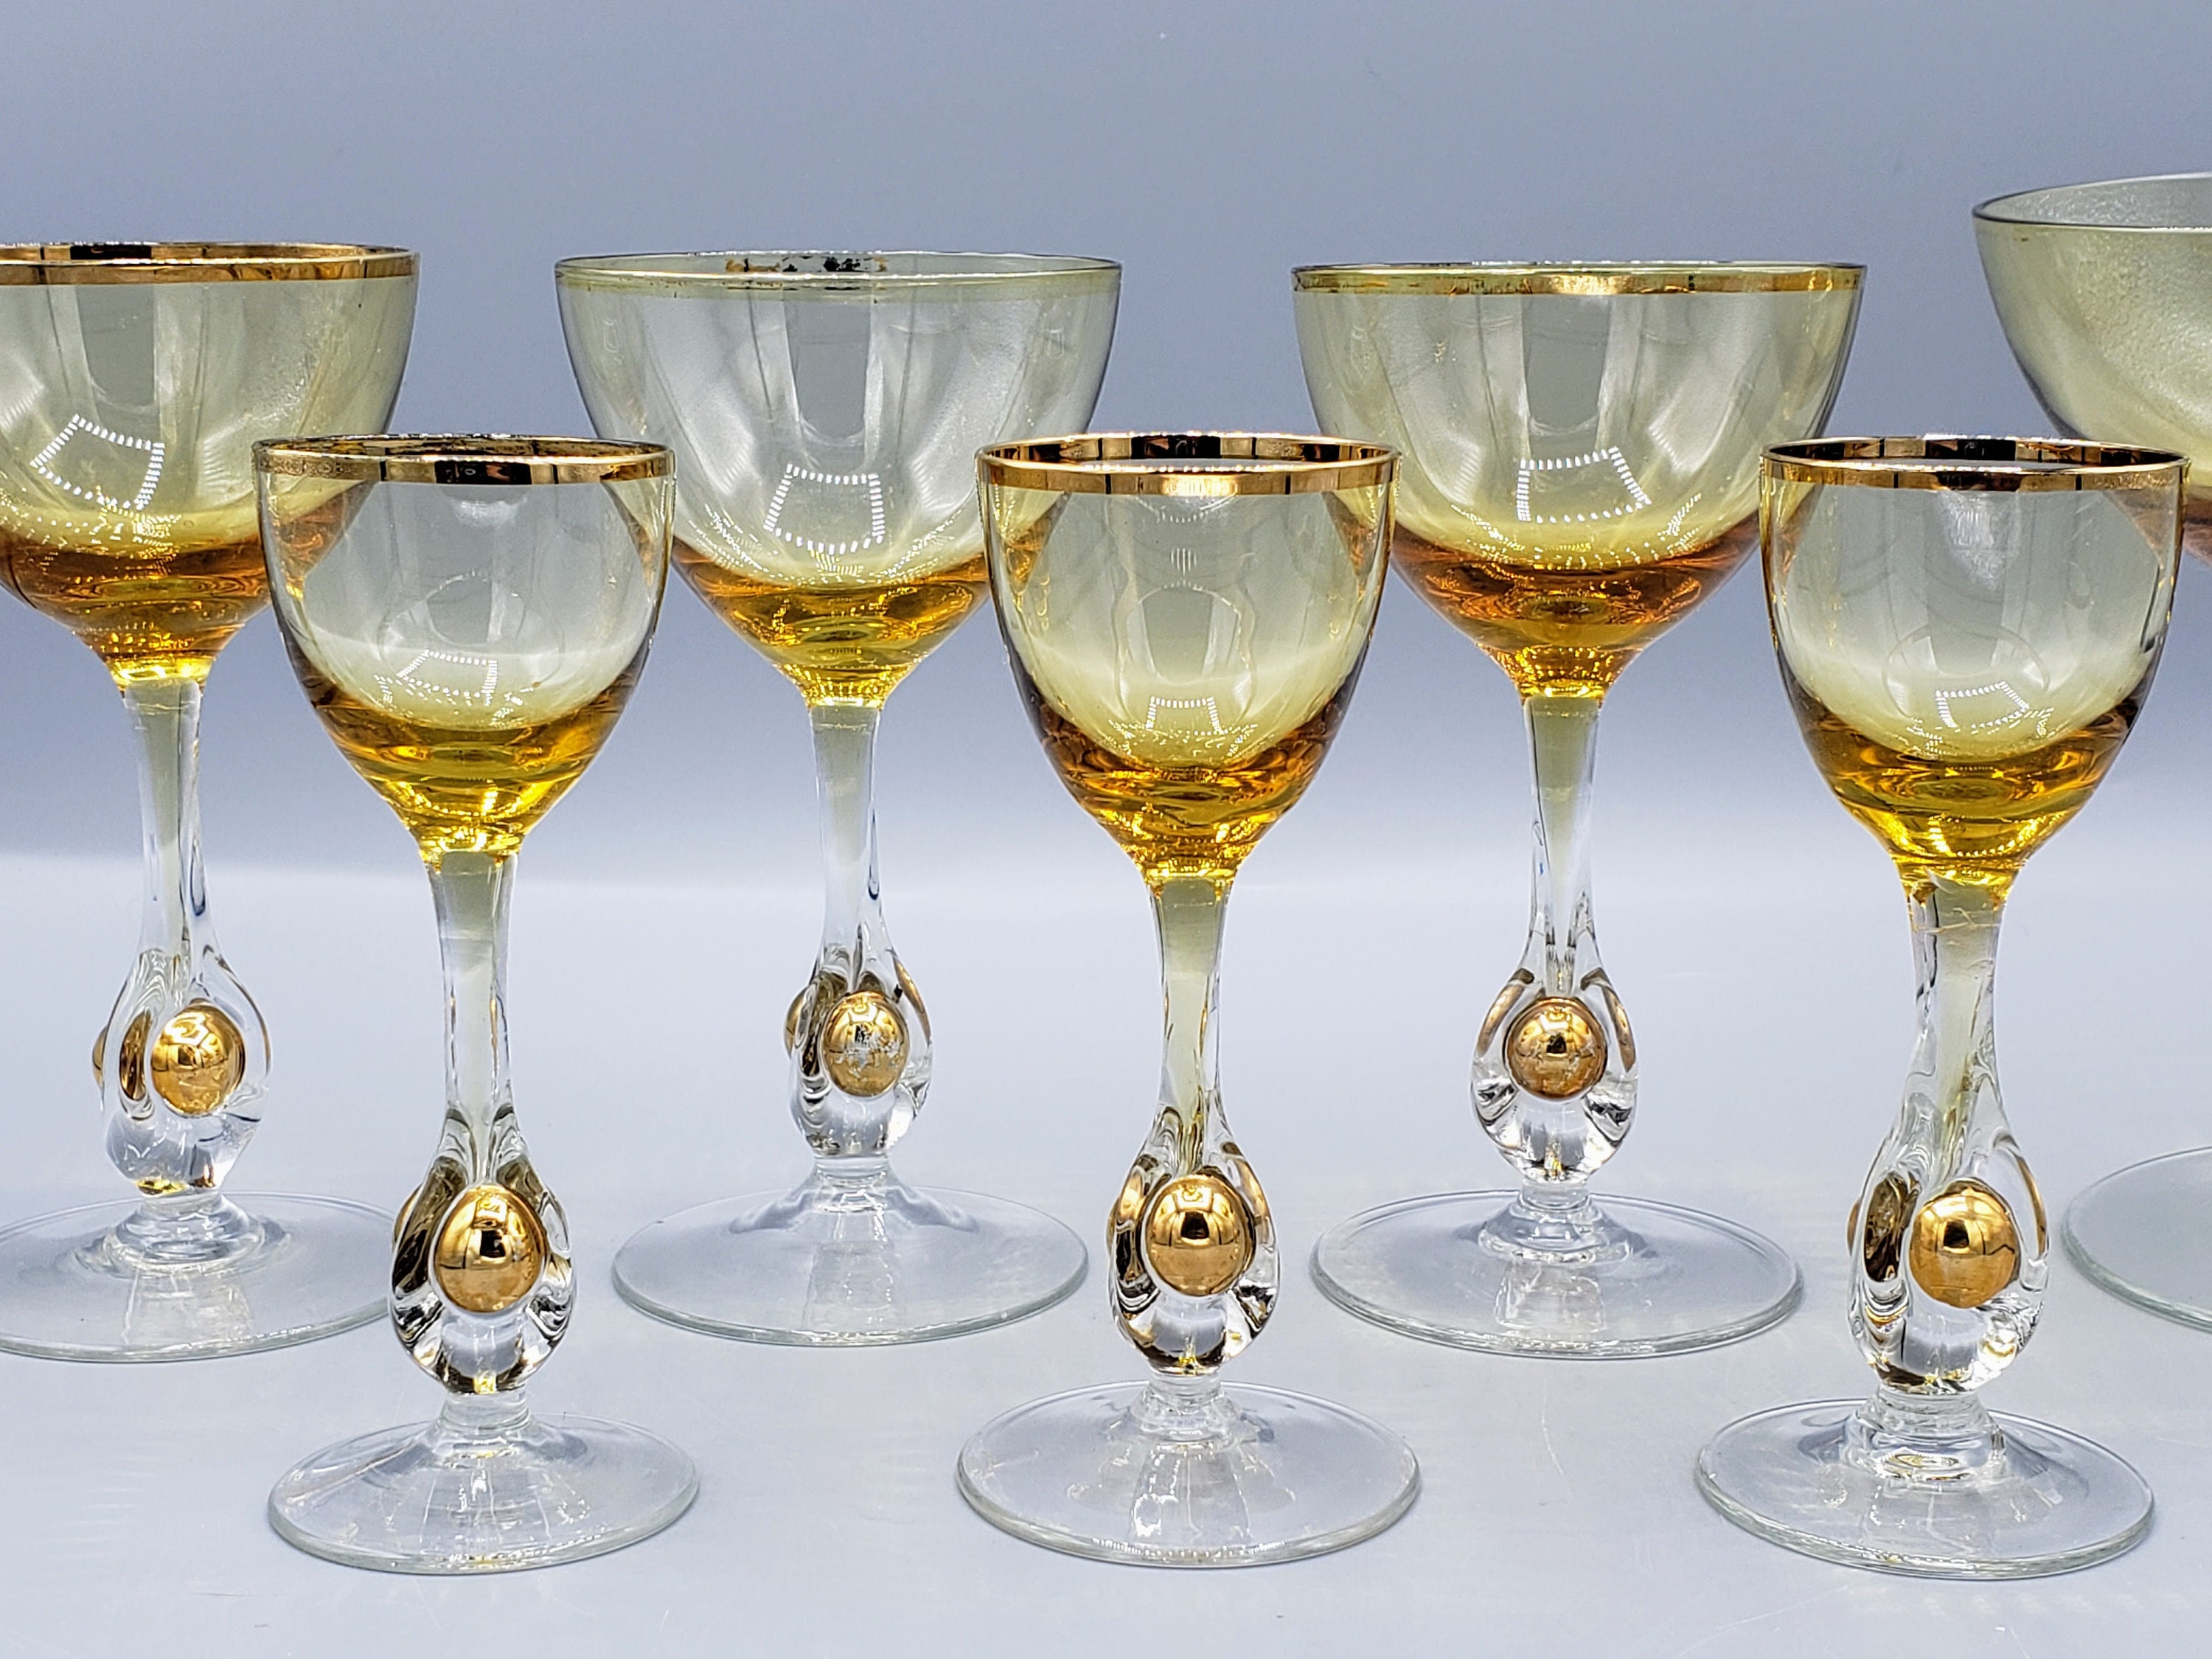 Zodax Aperitivo Martini Glass - Amber Marie and Company